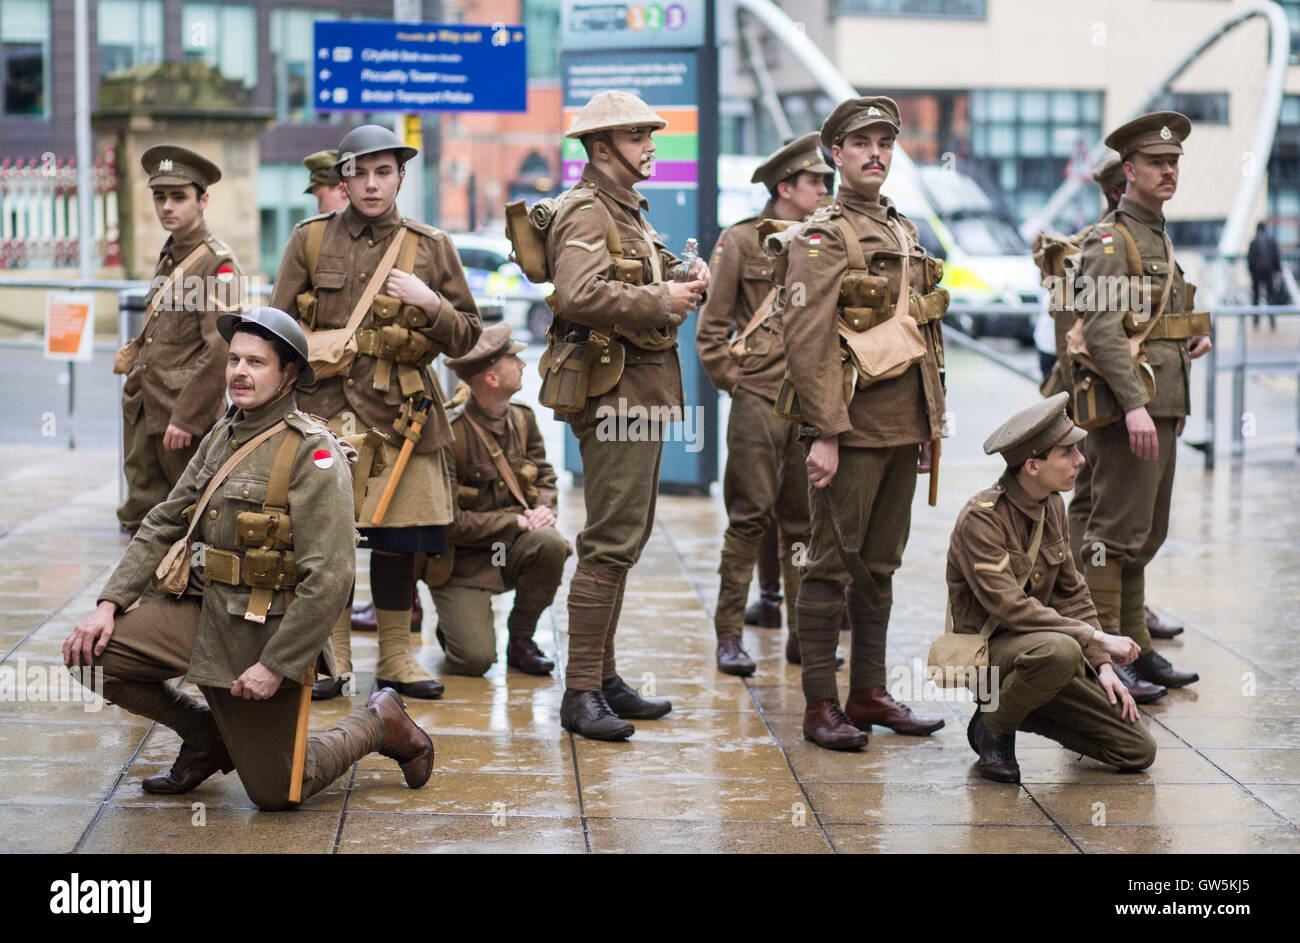 Manchester se conmemora el 100º aniversario de la batalla del Somme hoy (viernes 1 de julio de 2016) con un emotivo homenaje. Foto de stock